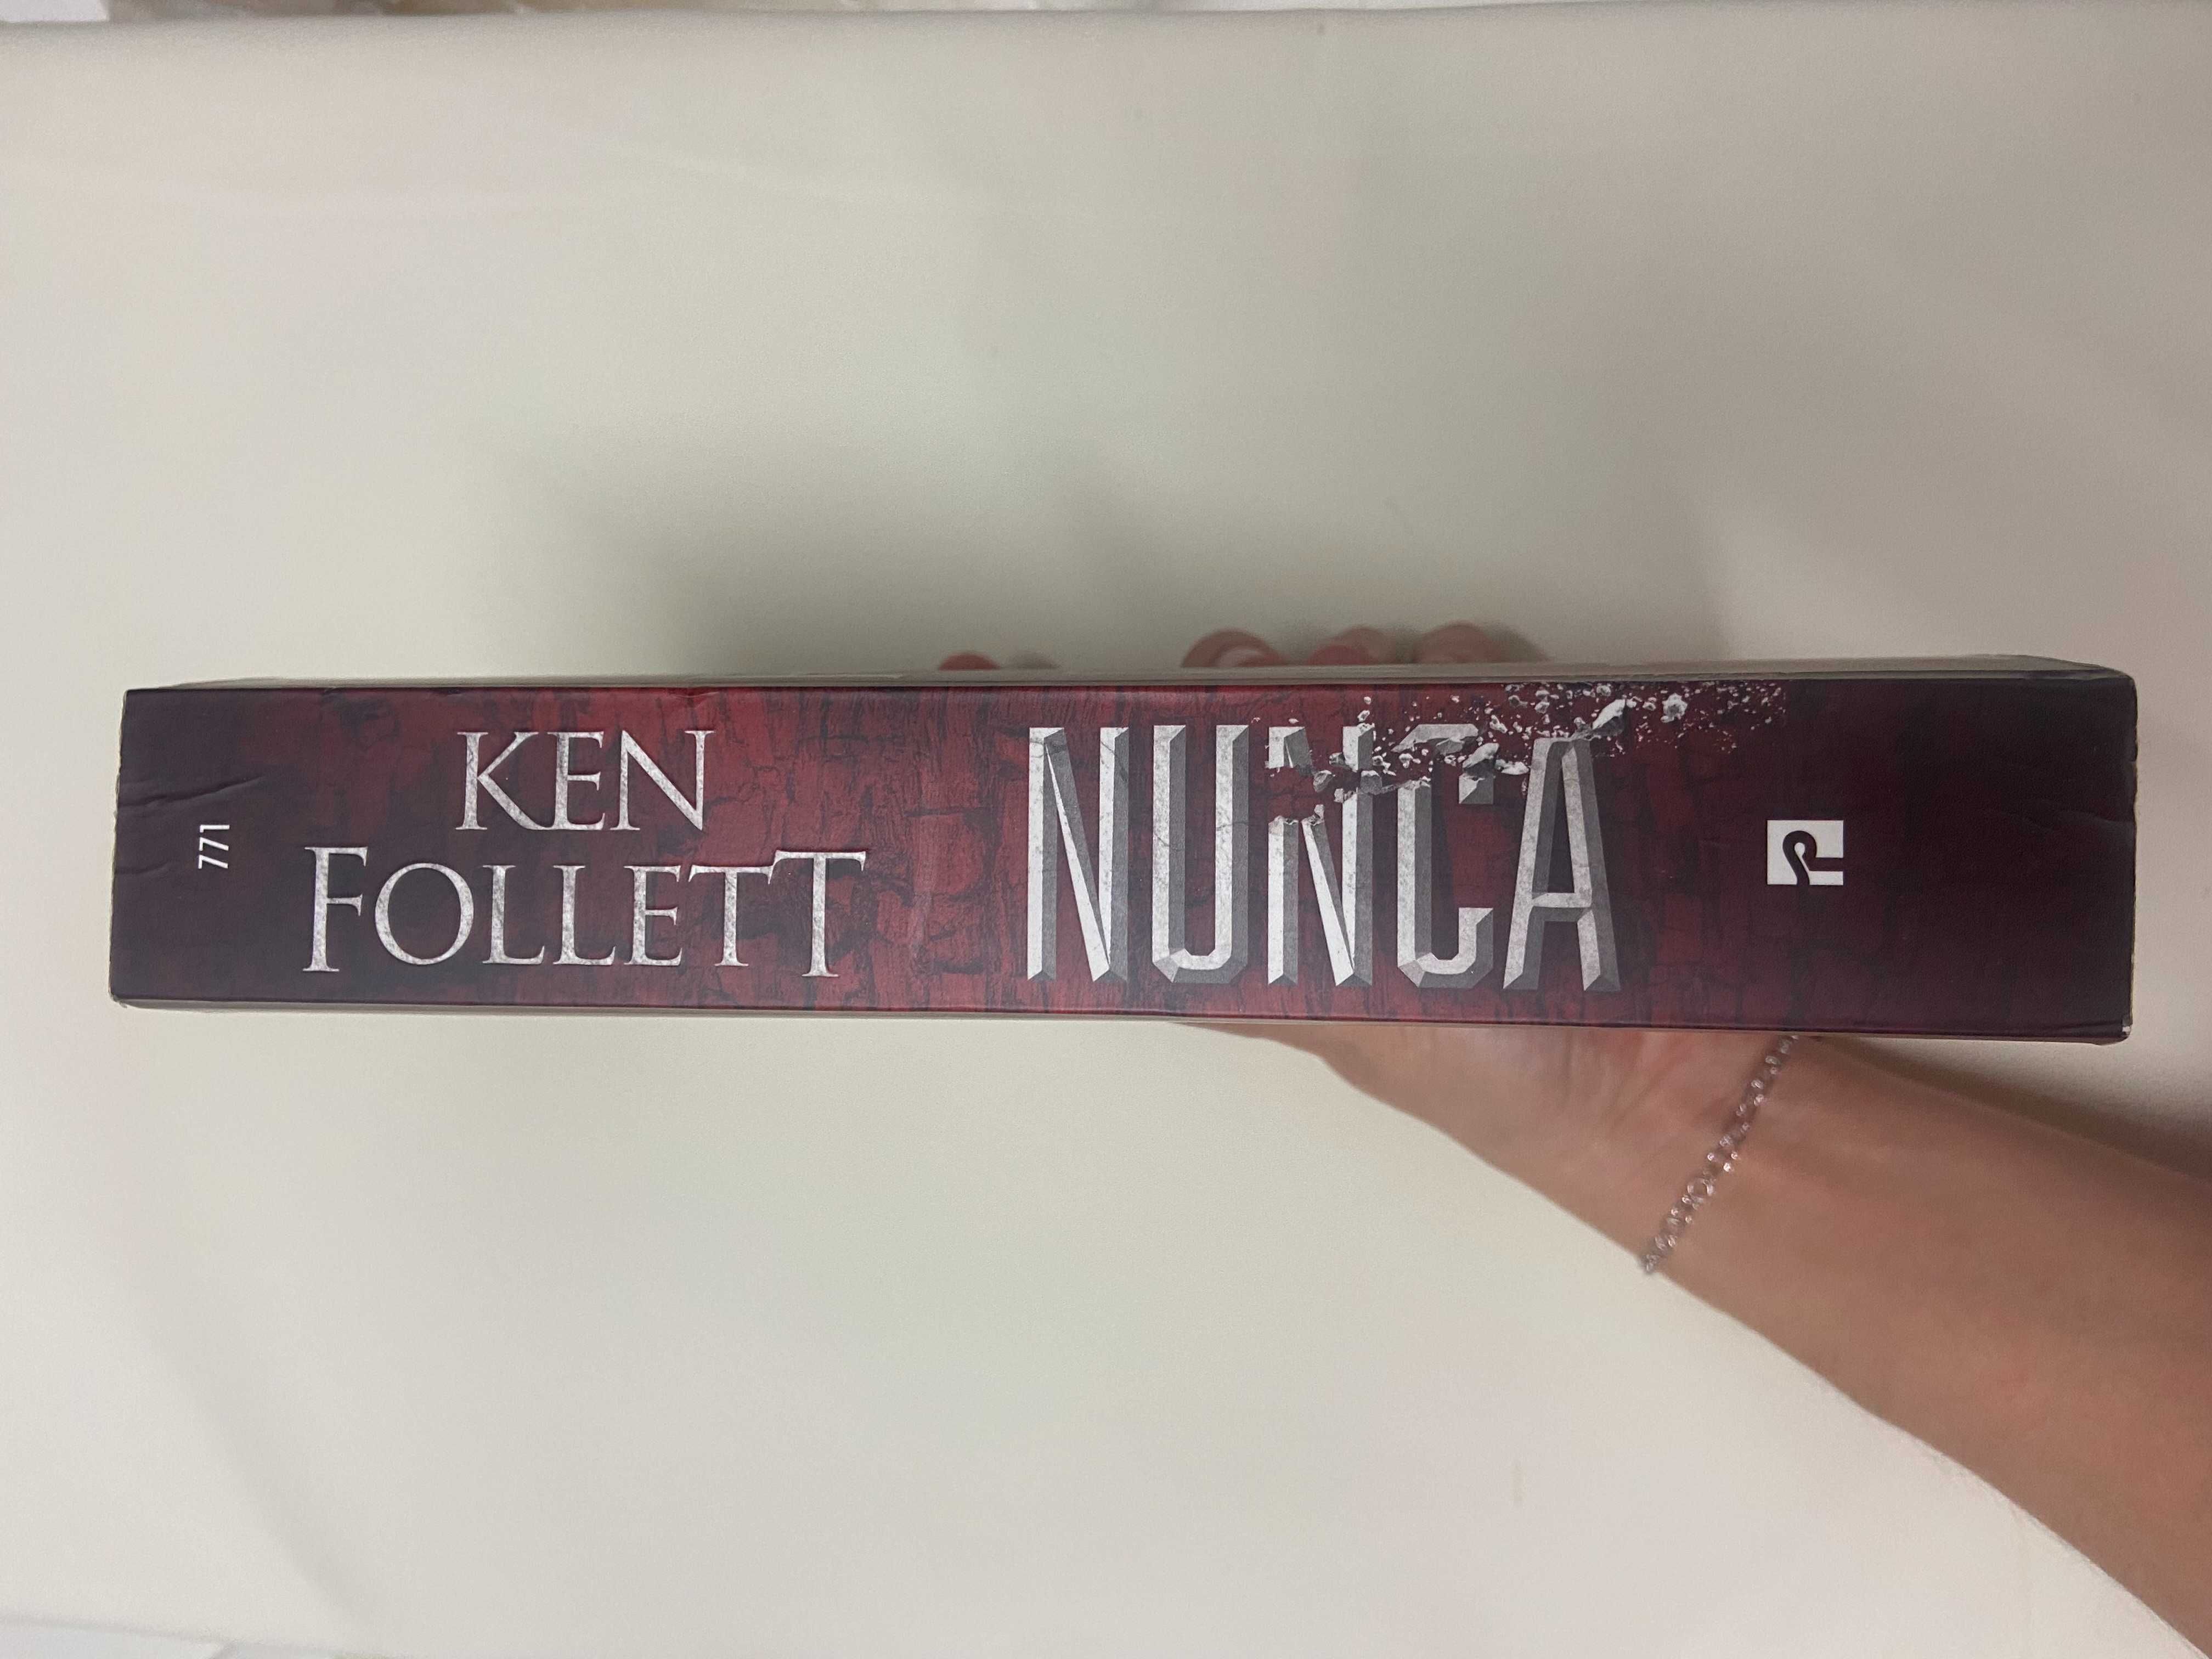 Nunca  - Best Seller de Ken Follett (Excelente, como Novo)